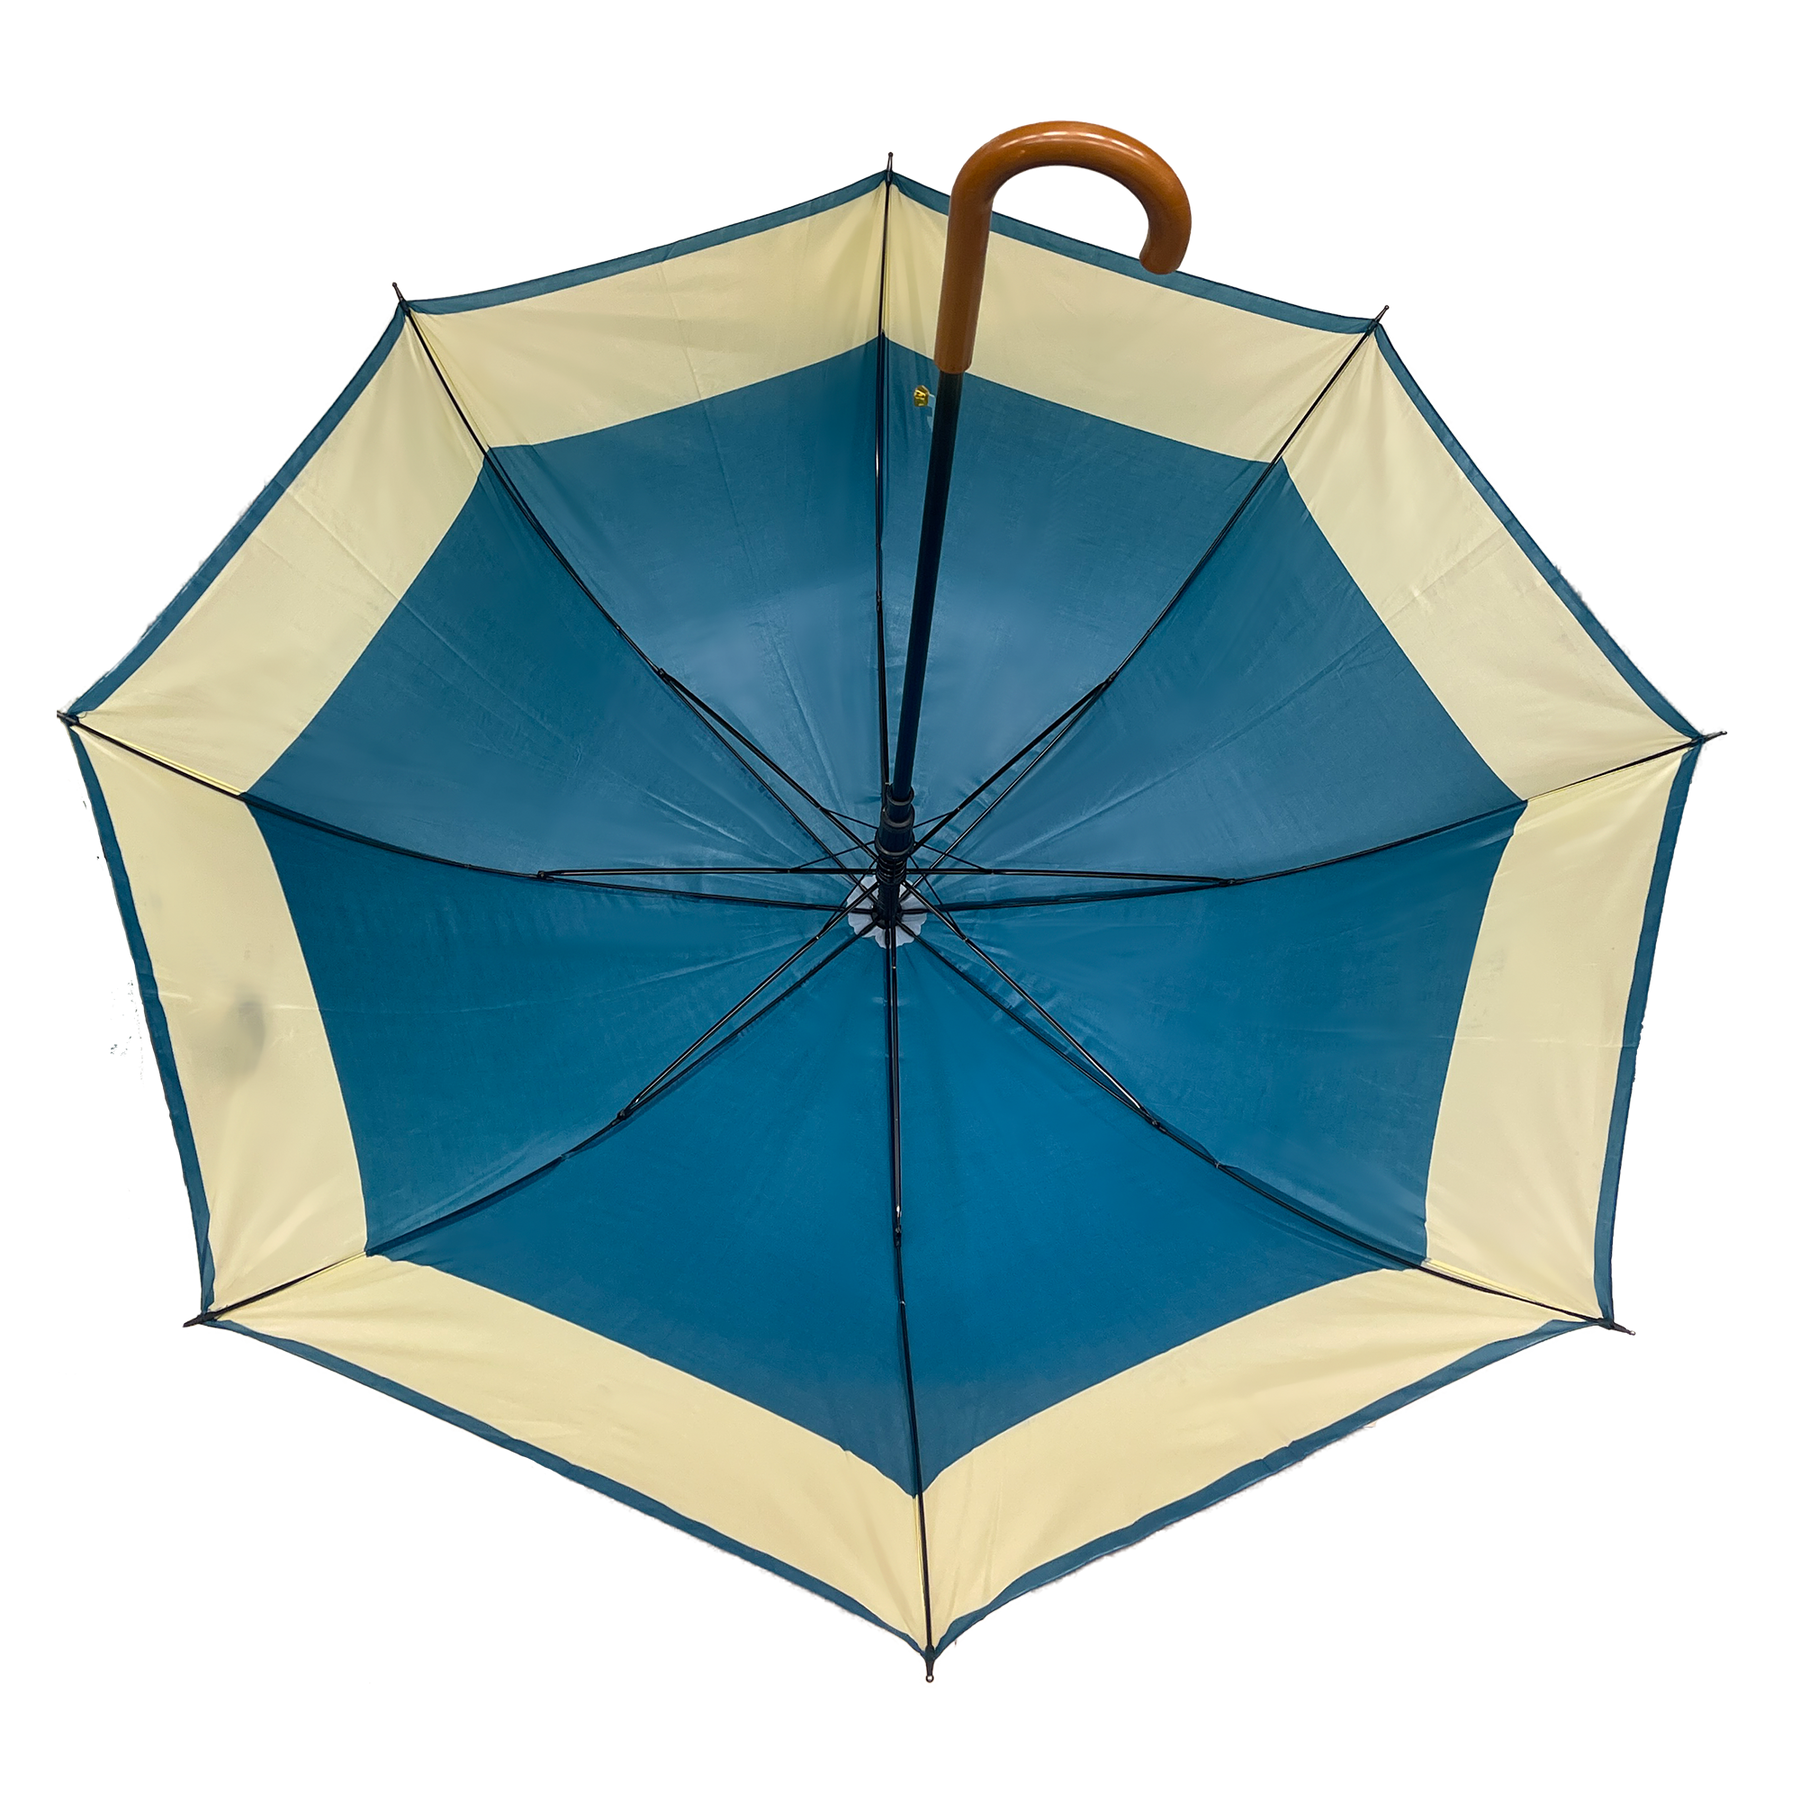 Umbrella clásica con abertura automática: mango de madera curva y abertura ancha